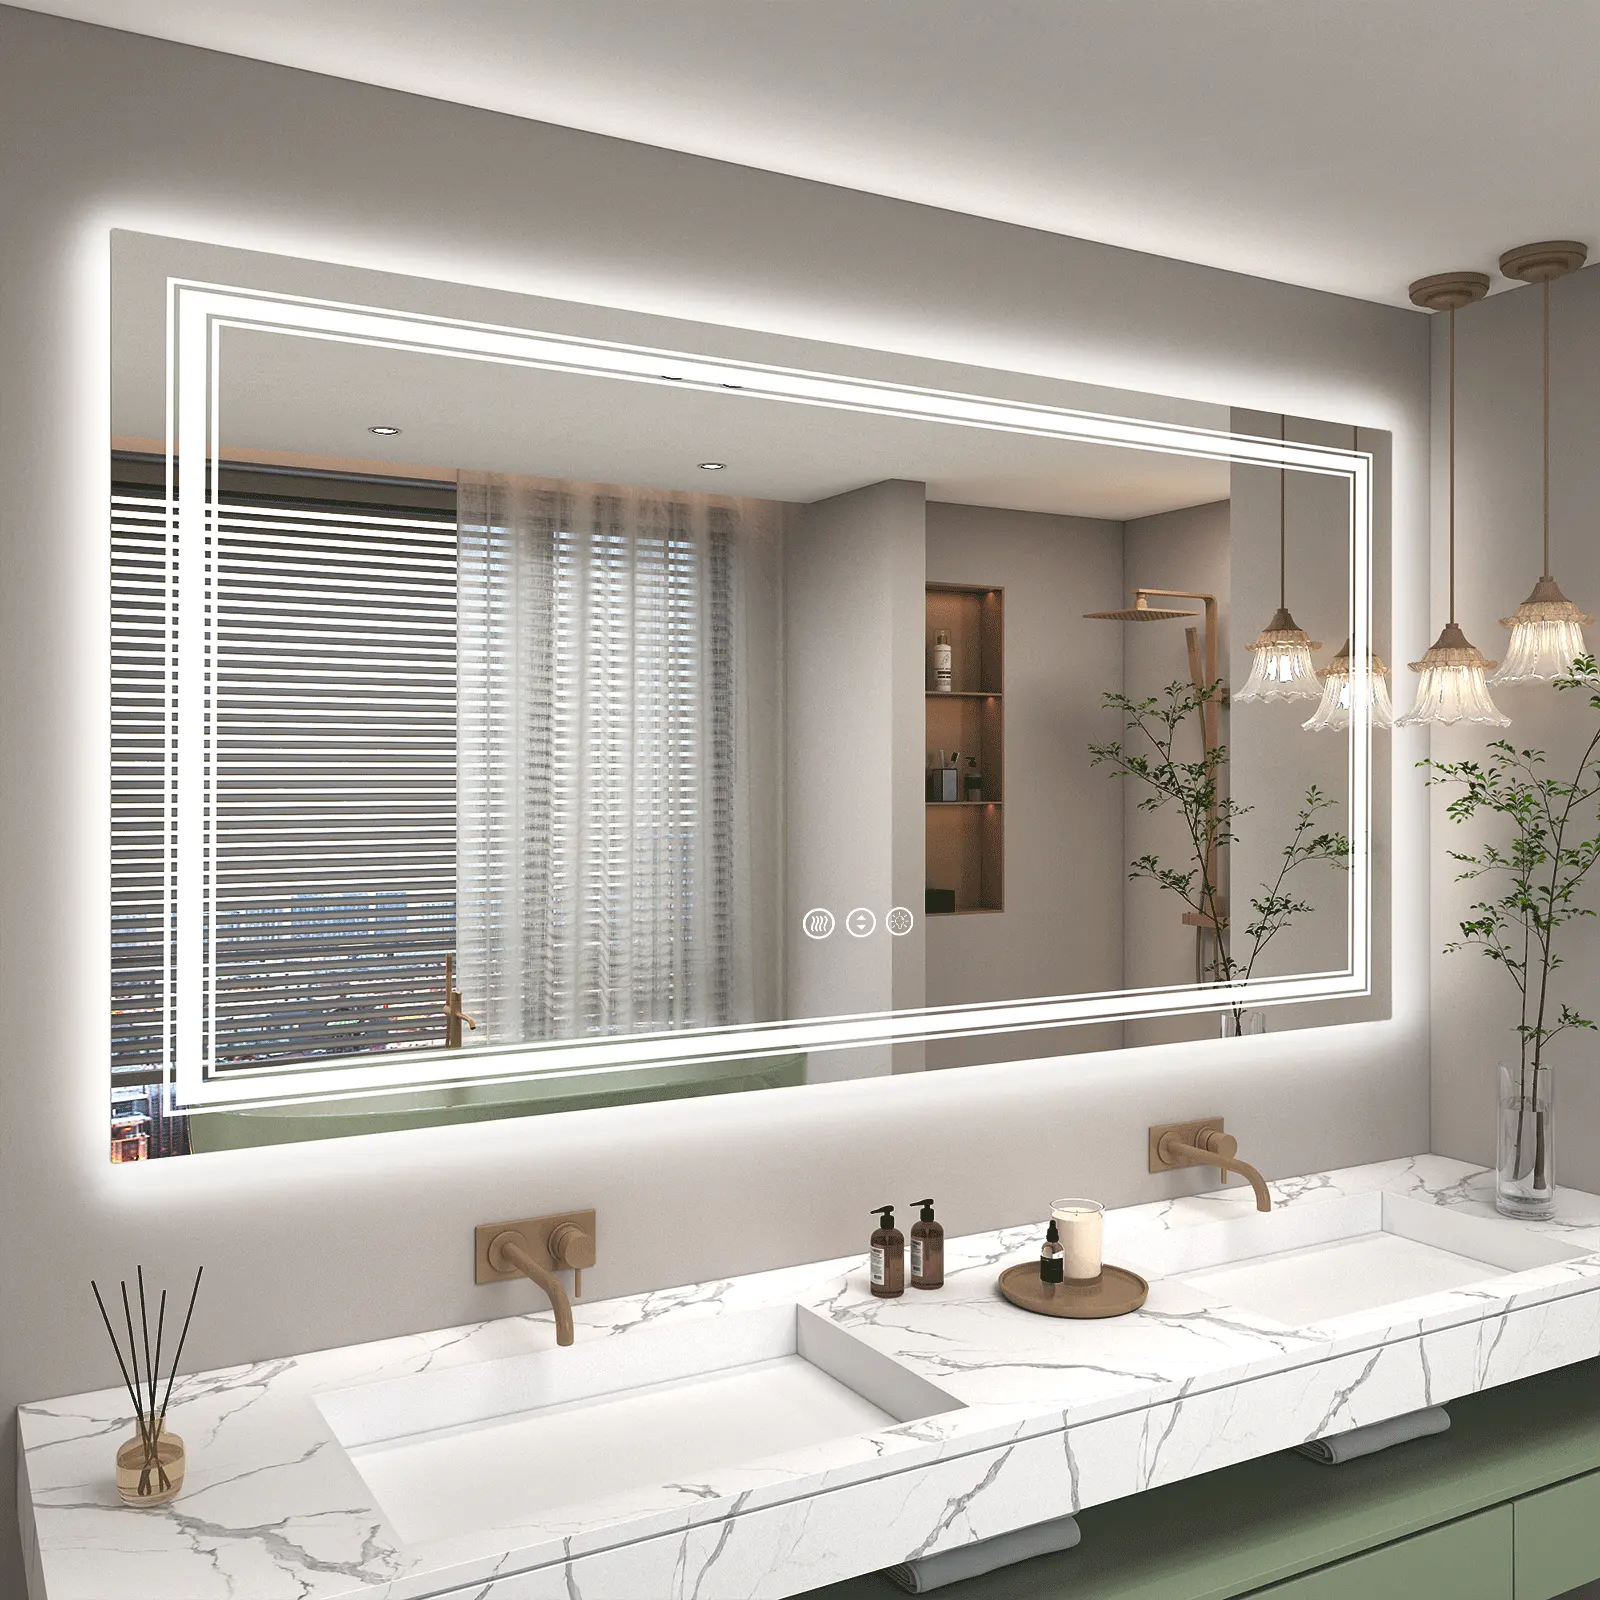 Novo Design Inteligente Conduziu Espelho Banheiro Vaidade Levou Luz Espelho Do Banheiro Temperado